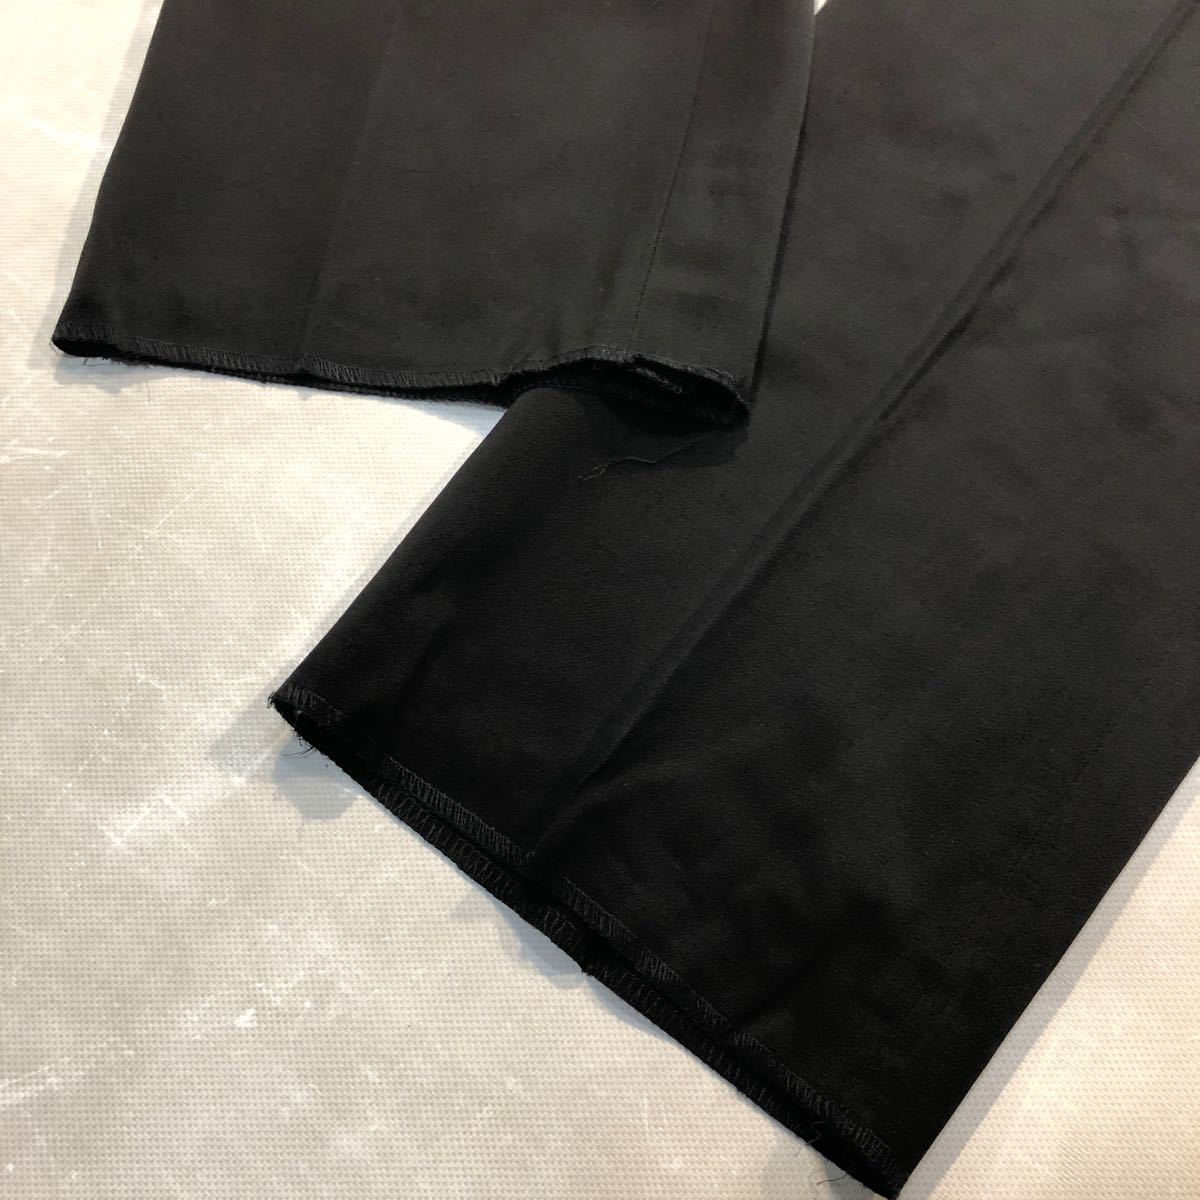  новый товар AB7(XL) черный формальный мужской двубортный костюм { обычная цена 4.2 десять тысяч иен * глянец чувство подлинный . чёрный безупречный .. одежда } праздничные обряды траурный костюм выставить шерсть 93%